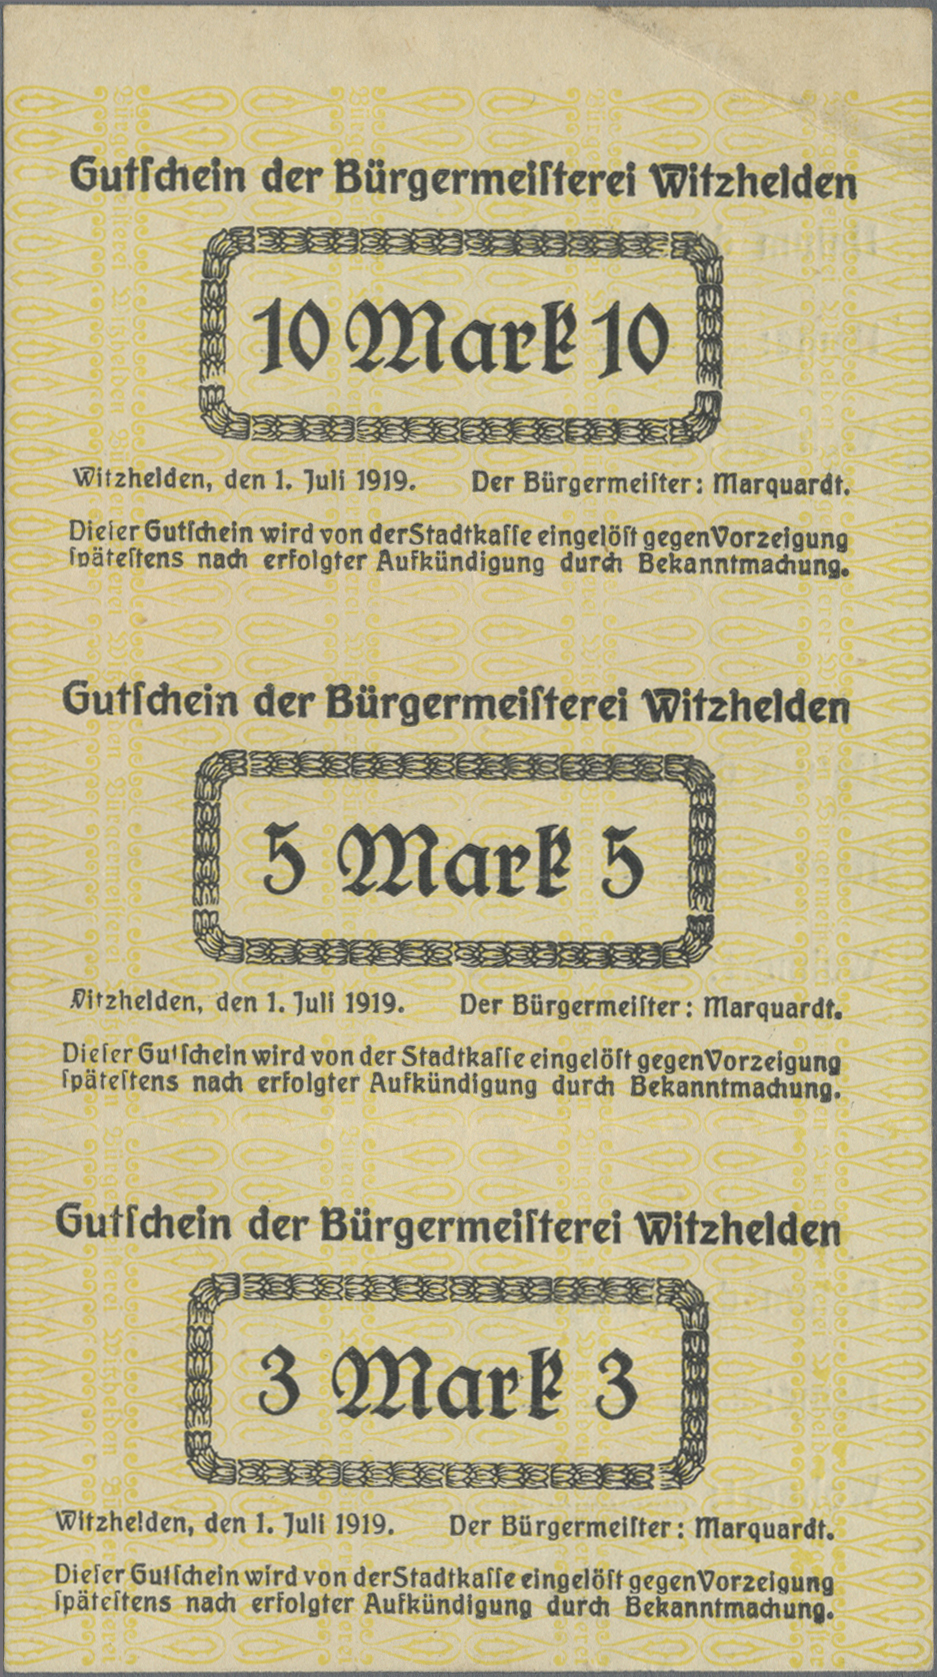 Lot 00626 - Deutschland - Notgeld - Rheinland | Banknoten  -  Auktionshaus Christoph Gärtner GmbH & Co. KG 54th AUCTION - Day 1 Coins & Banknotes